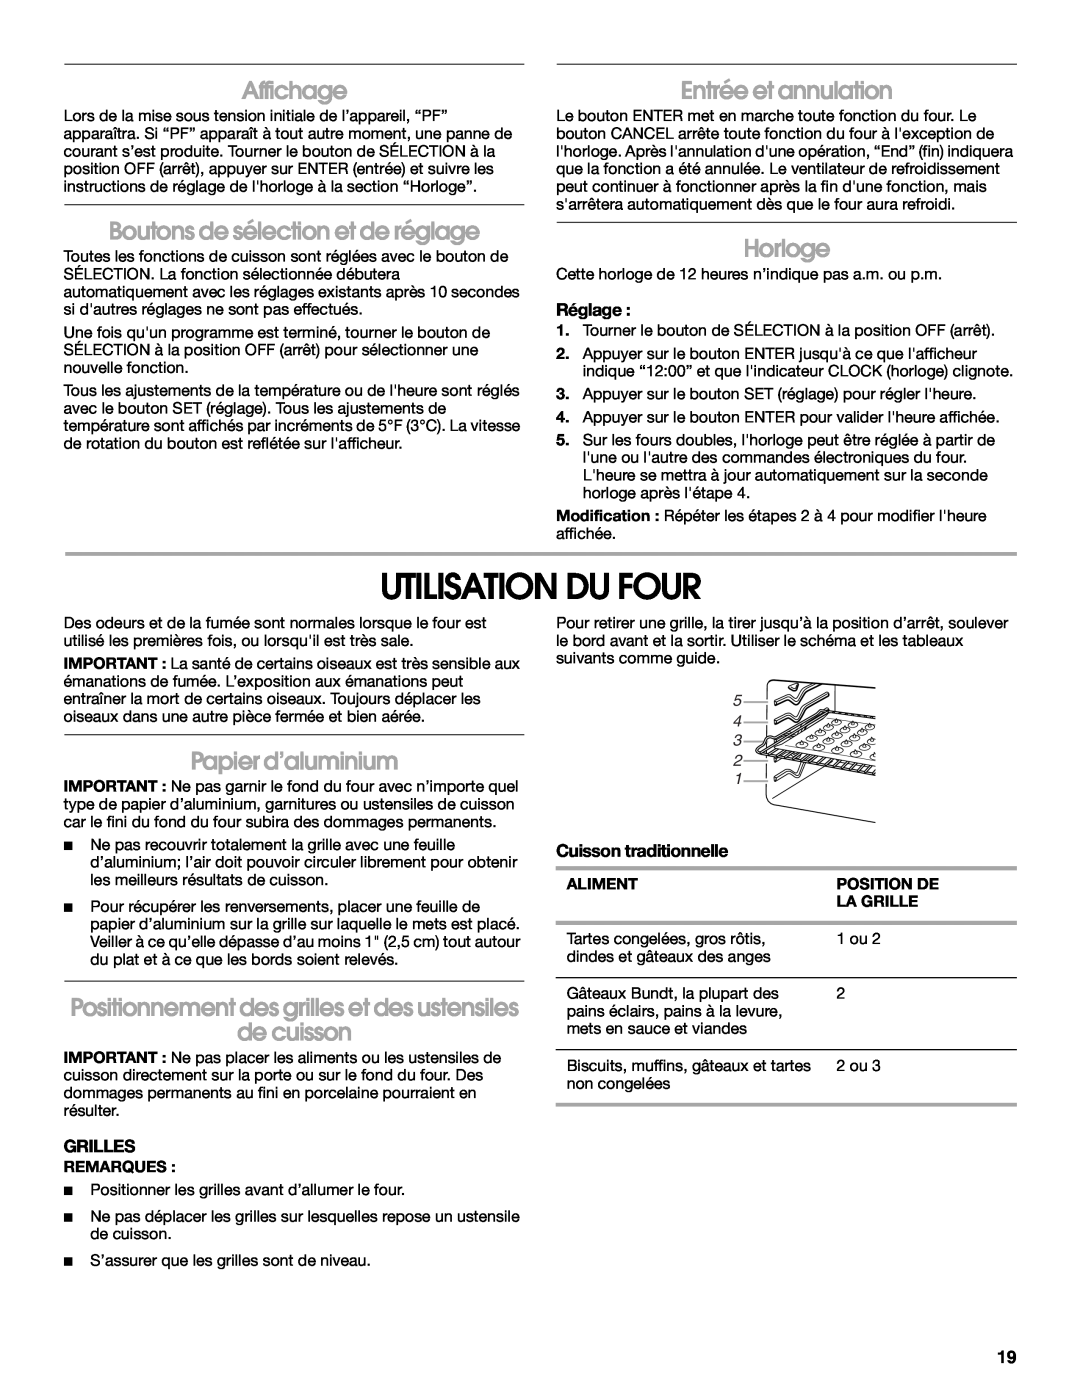 Whirlpool IBS550P manual Utilisation Du Four, Affichage, Entrée et annulation, Boutons de sélection et de réglage, Horloge 